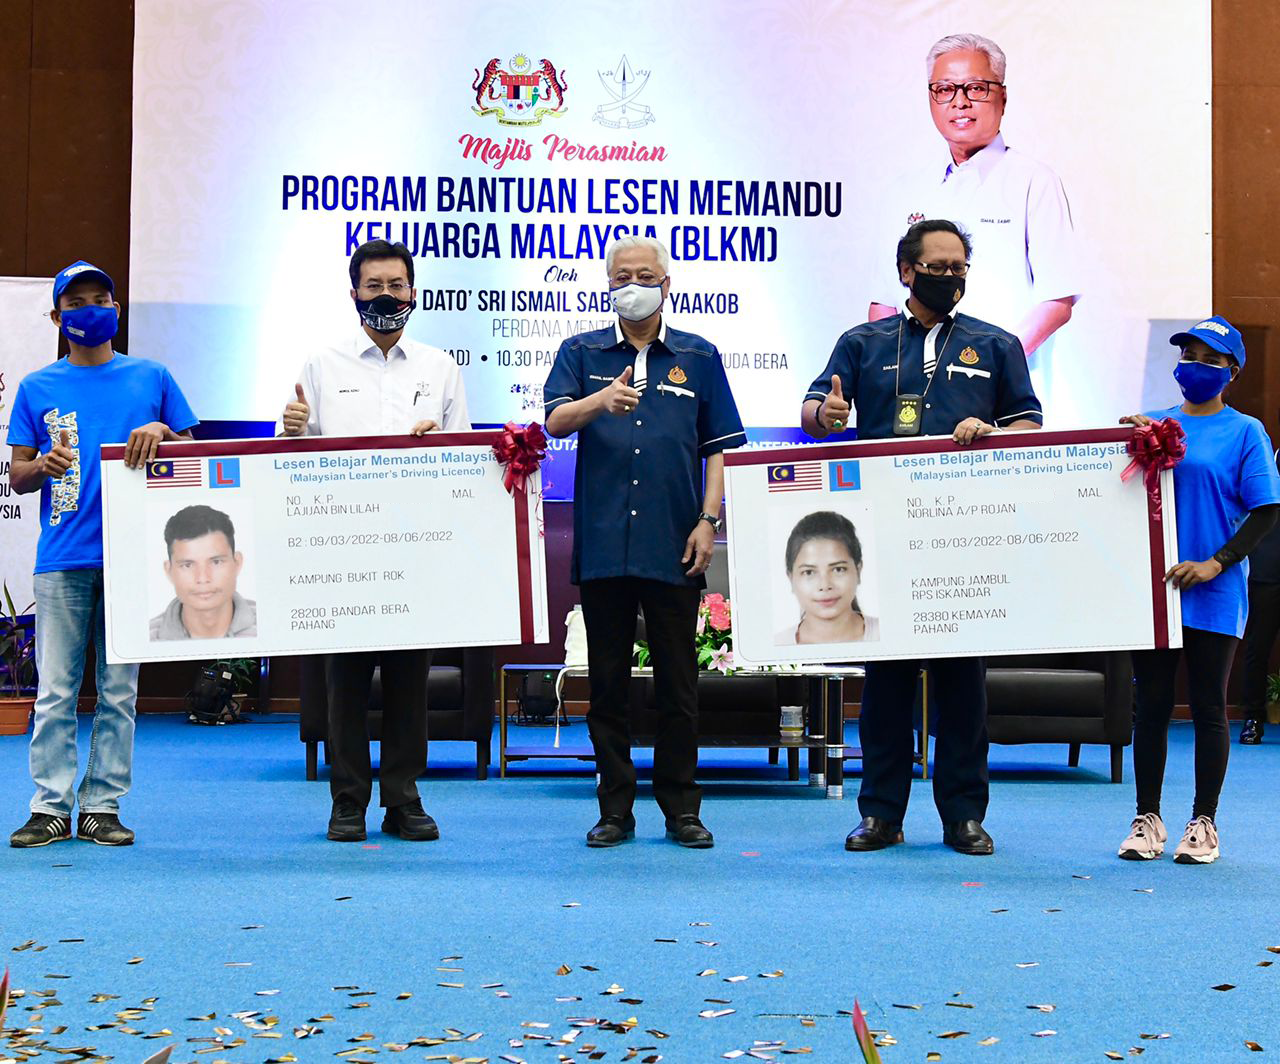 Bantuan Lesen Memandu Keluarga Malaysia